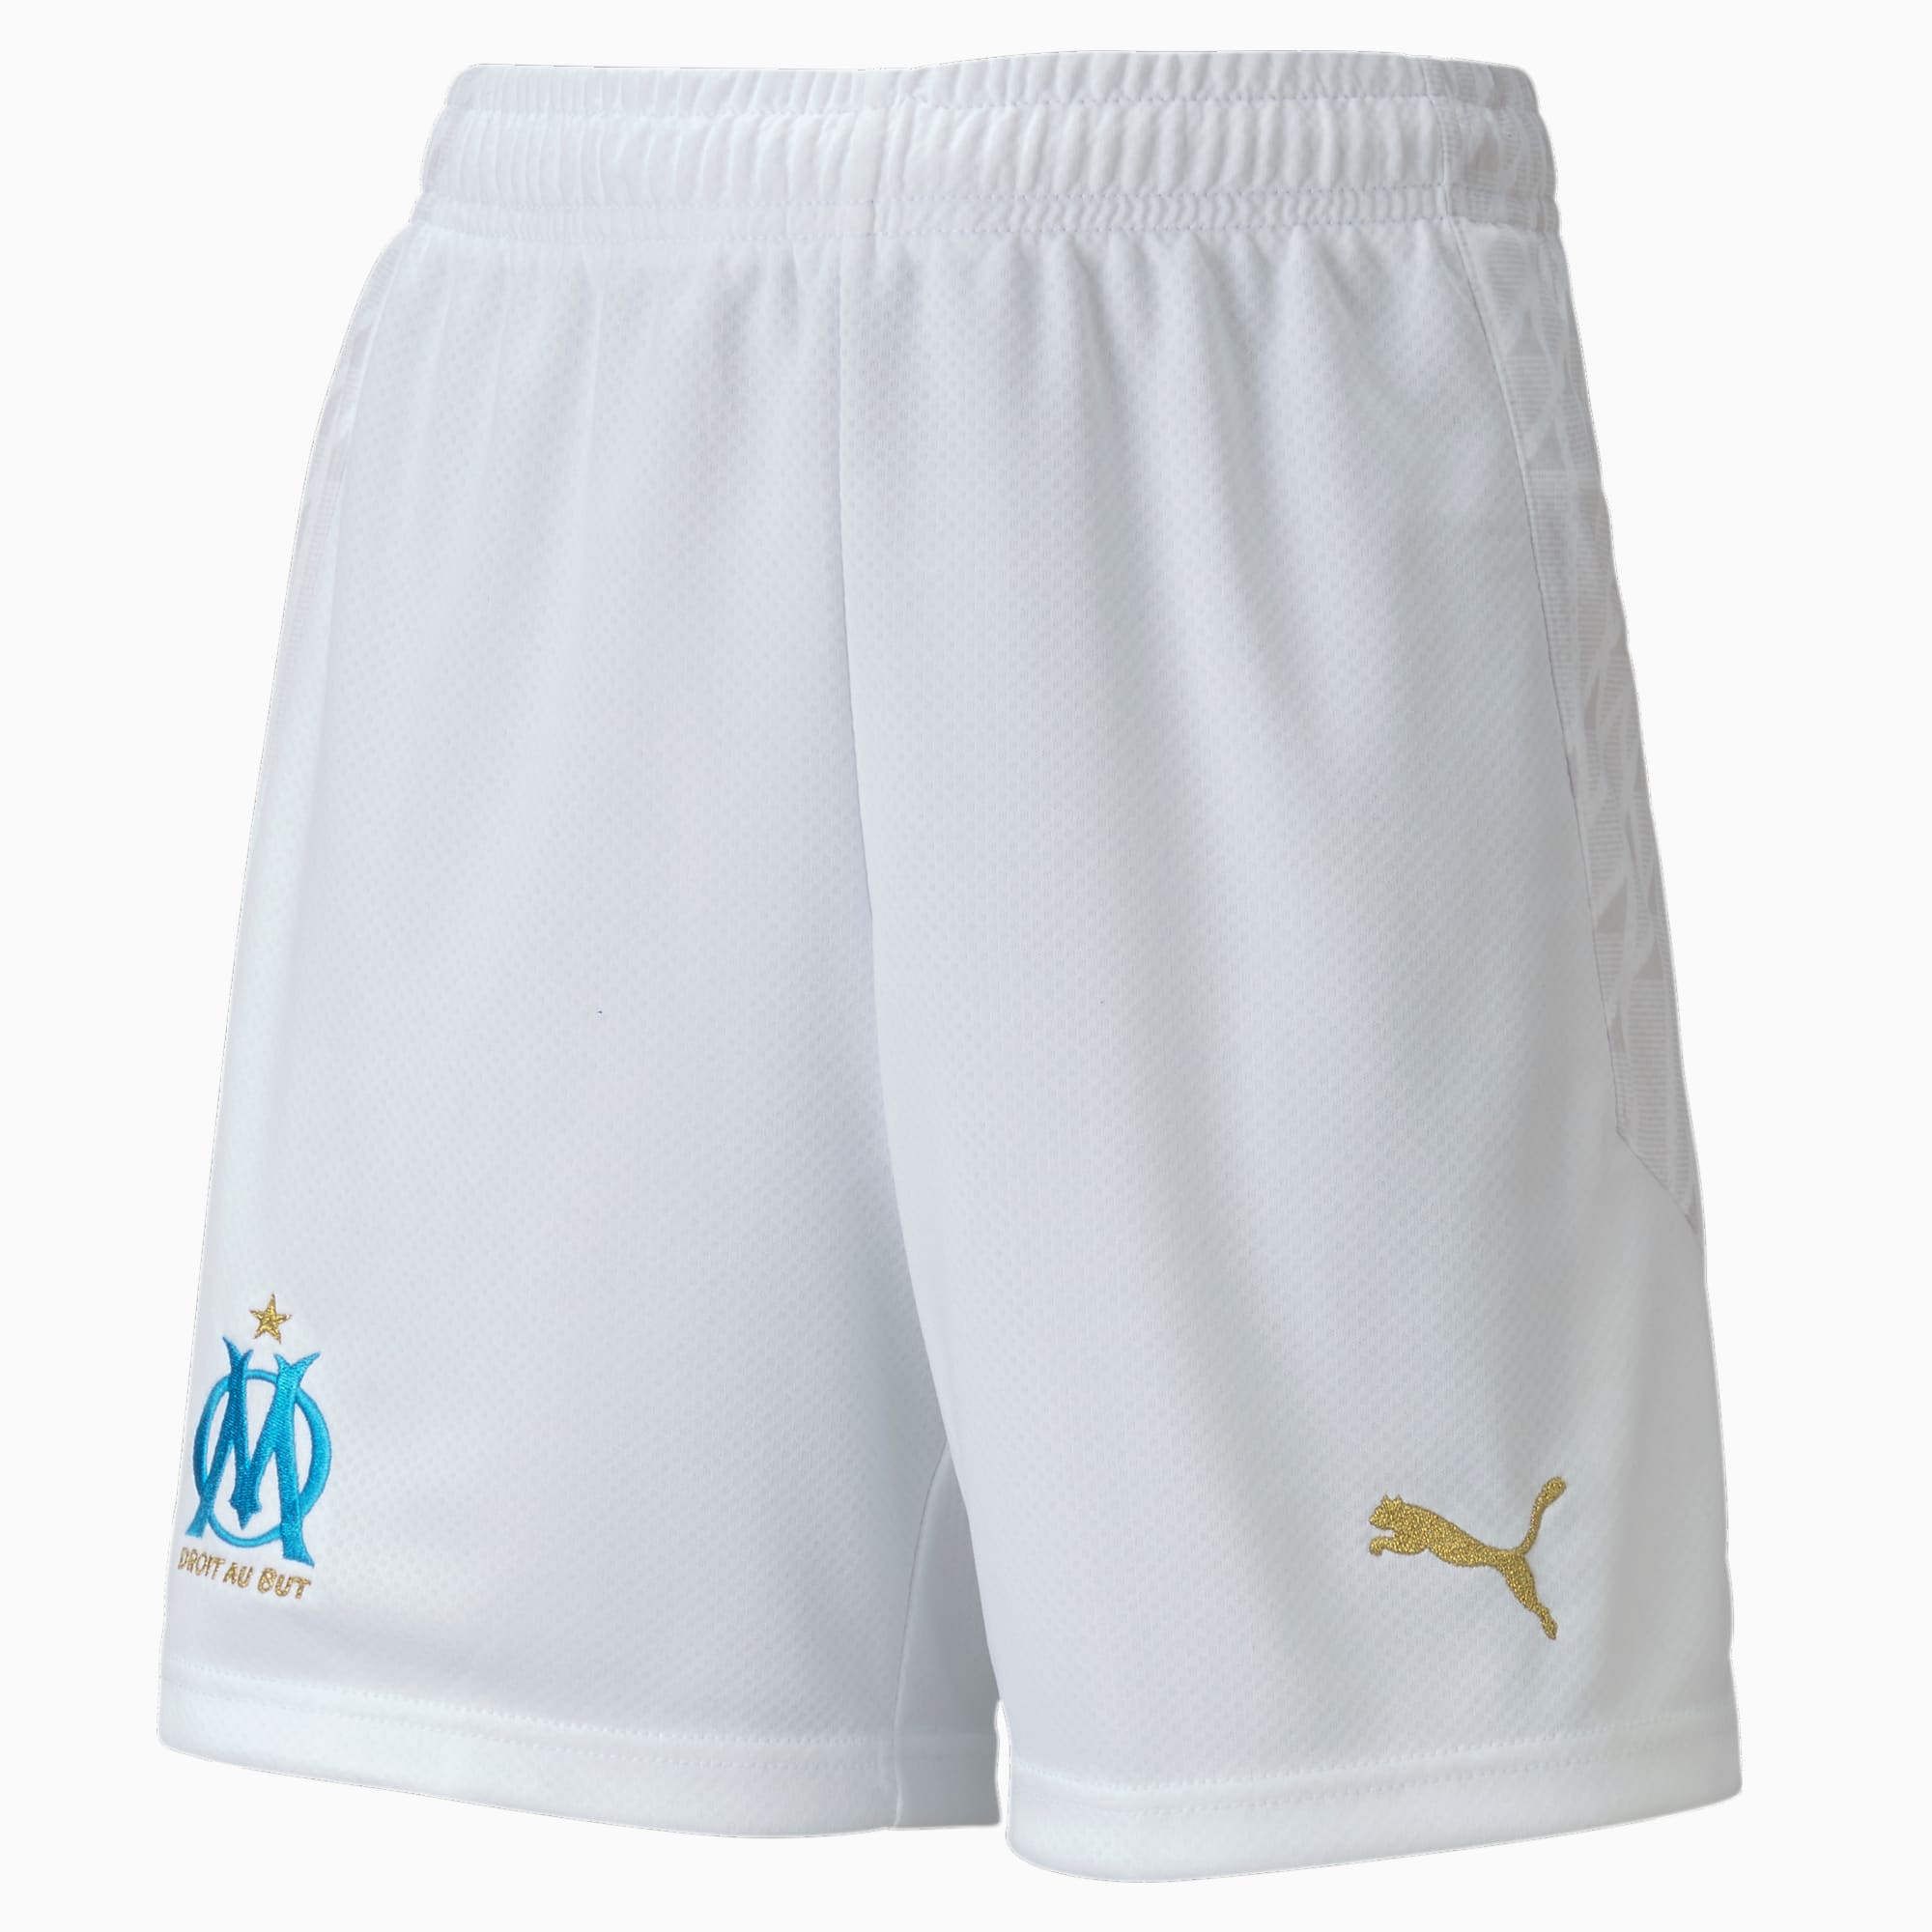 PUMA Short de football Olympique de Marseille Replica enfant et adolescent, Blanc/Bleu, Taille 164, Vêtements